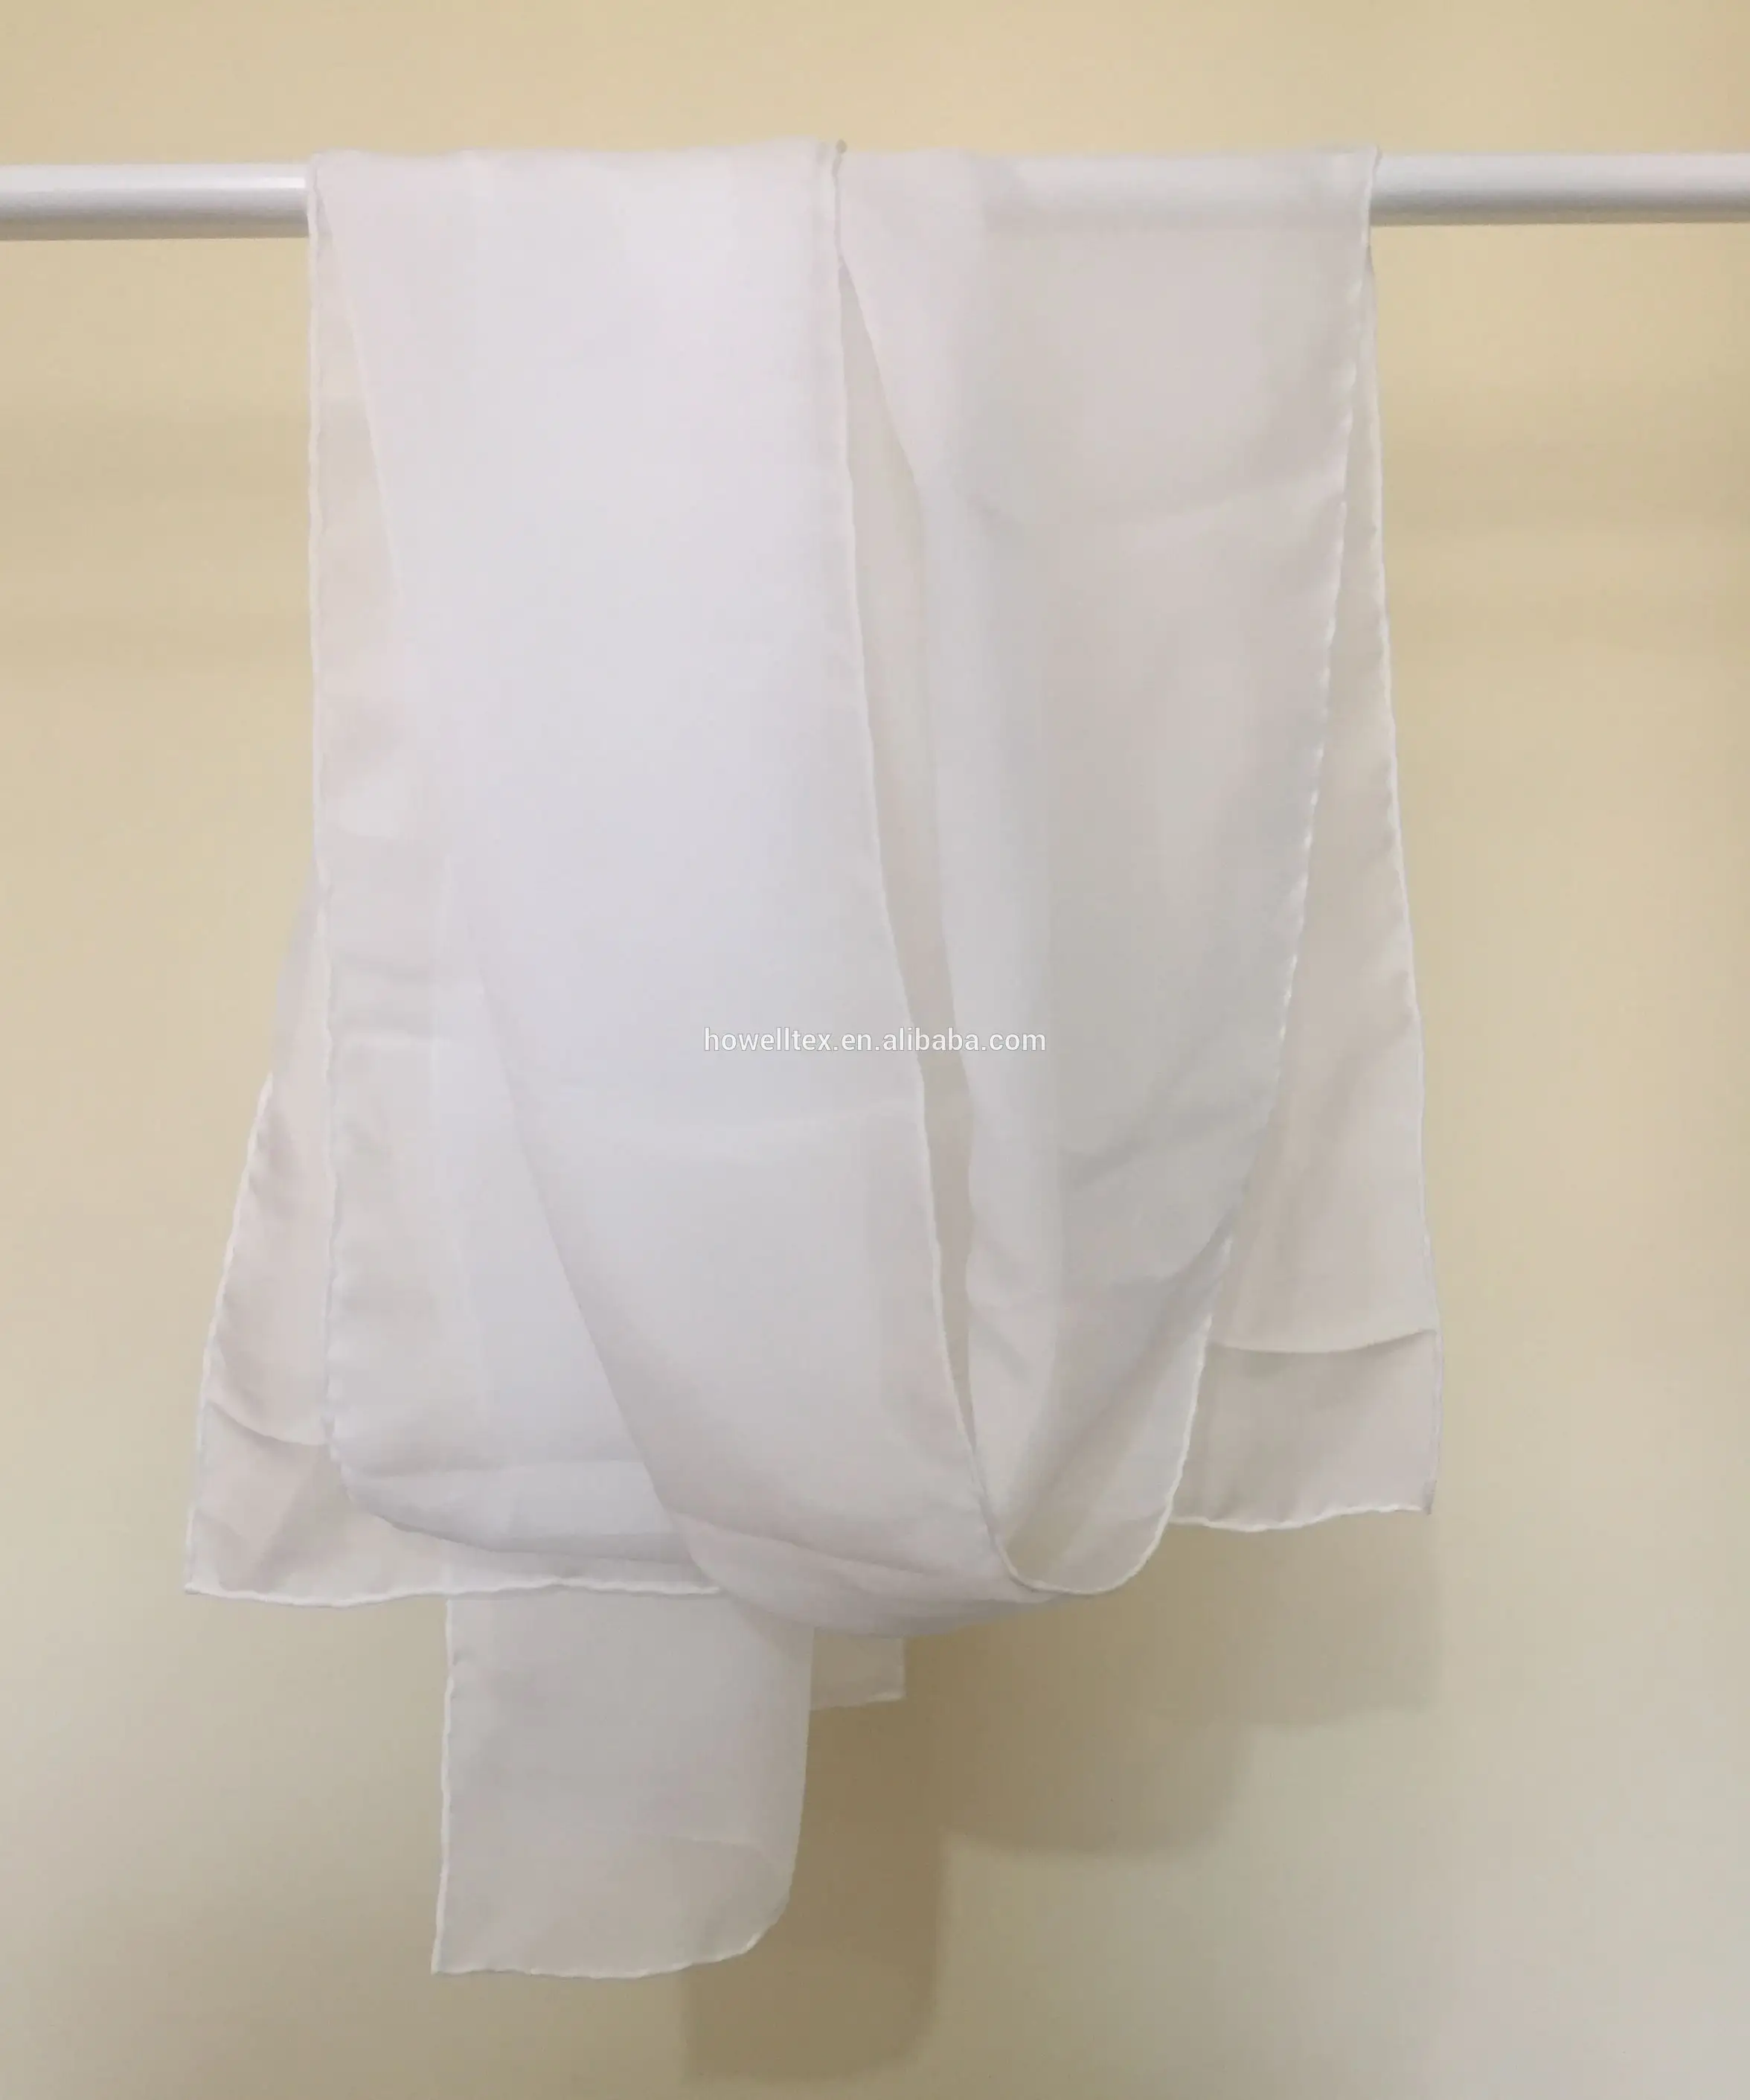 قماش شيفون حريري طبيعي عضوي عرض 12-54 بوصة أبيض غير مصبوغ منسوج هويل سادة نساء سودانيات توب 8 من الوزن المتوسط